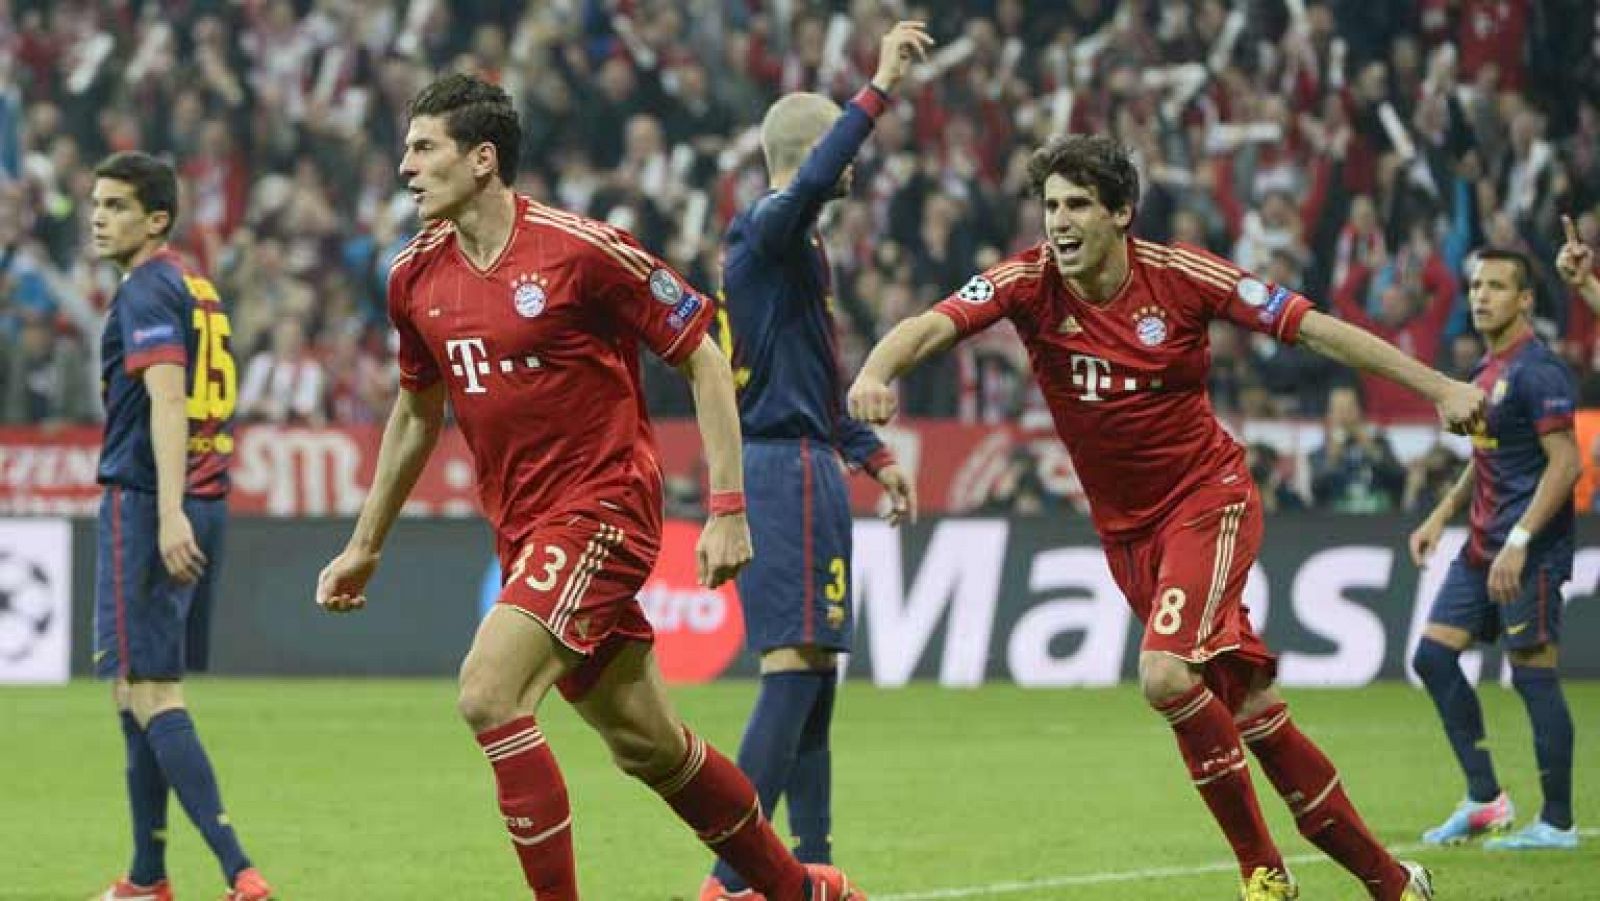 El delantero del Bayern de Múnich Mario Gómez ha marcado el segundo gol de su equipo ante el Barça en el minuto 50 de juego, tras un pase de Müller. 